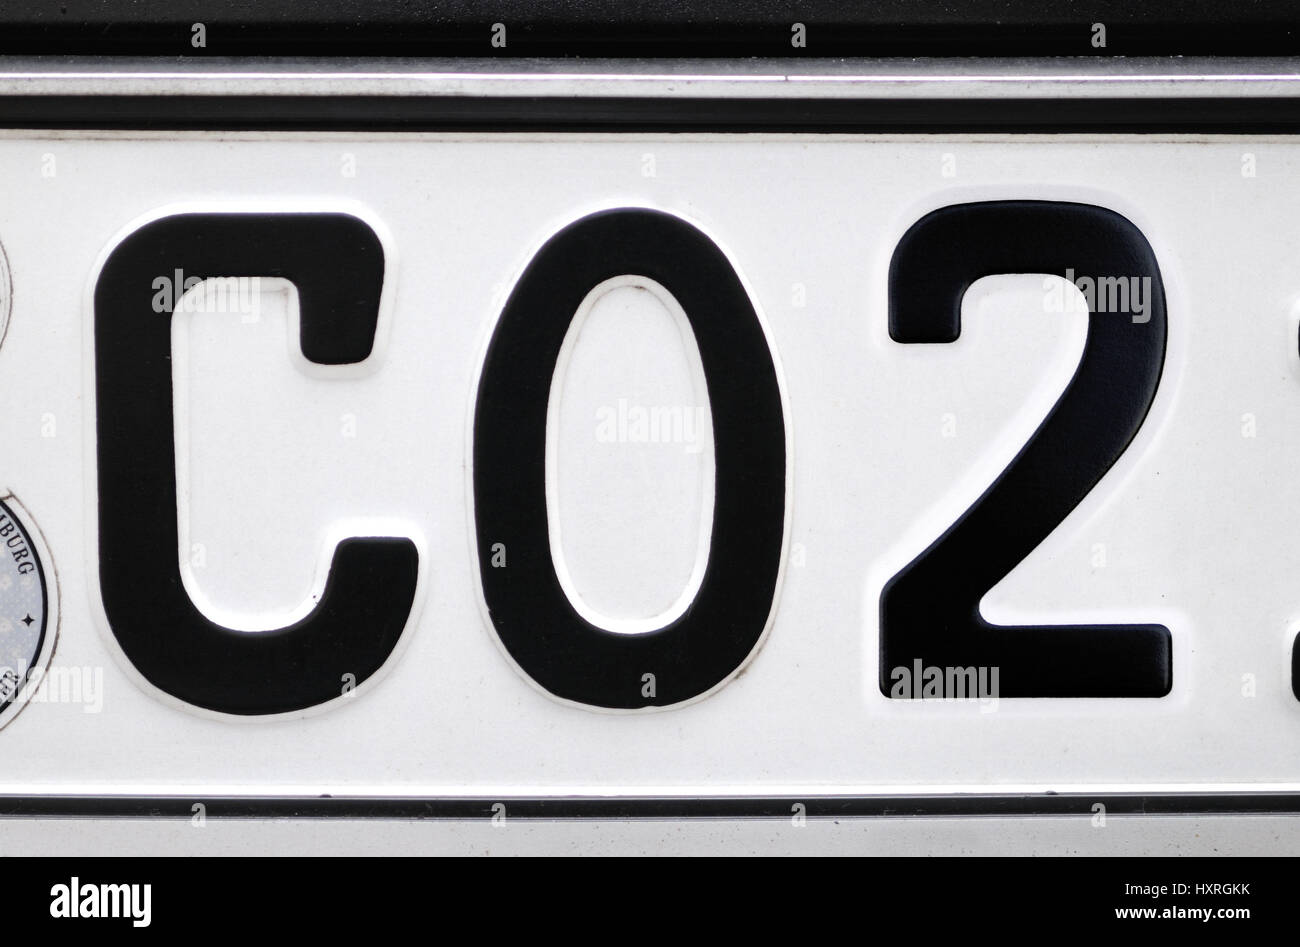 https://c8.alamy.com/comp/HXRGKK/car-registration-with-the-label-co2-autokennzeichen-mit-der-aufschrift-HXRGKK.jpg